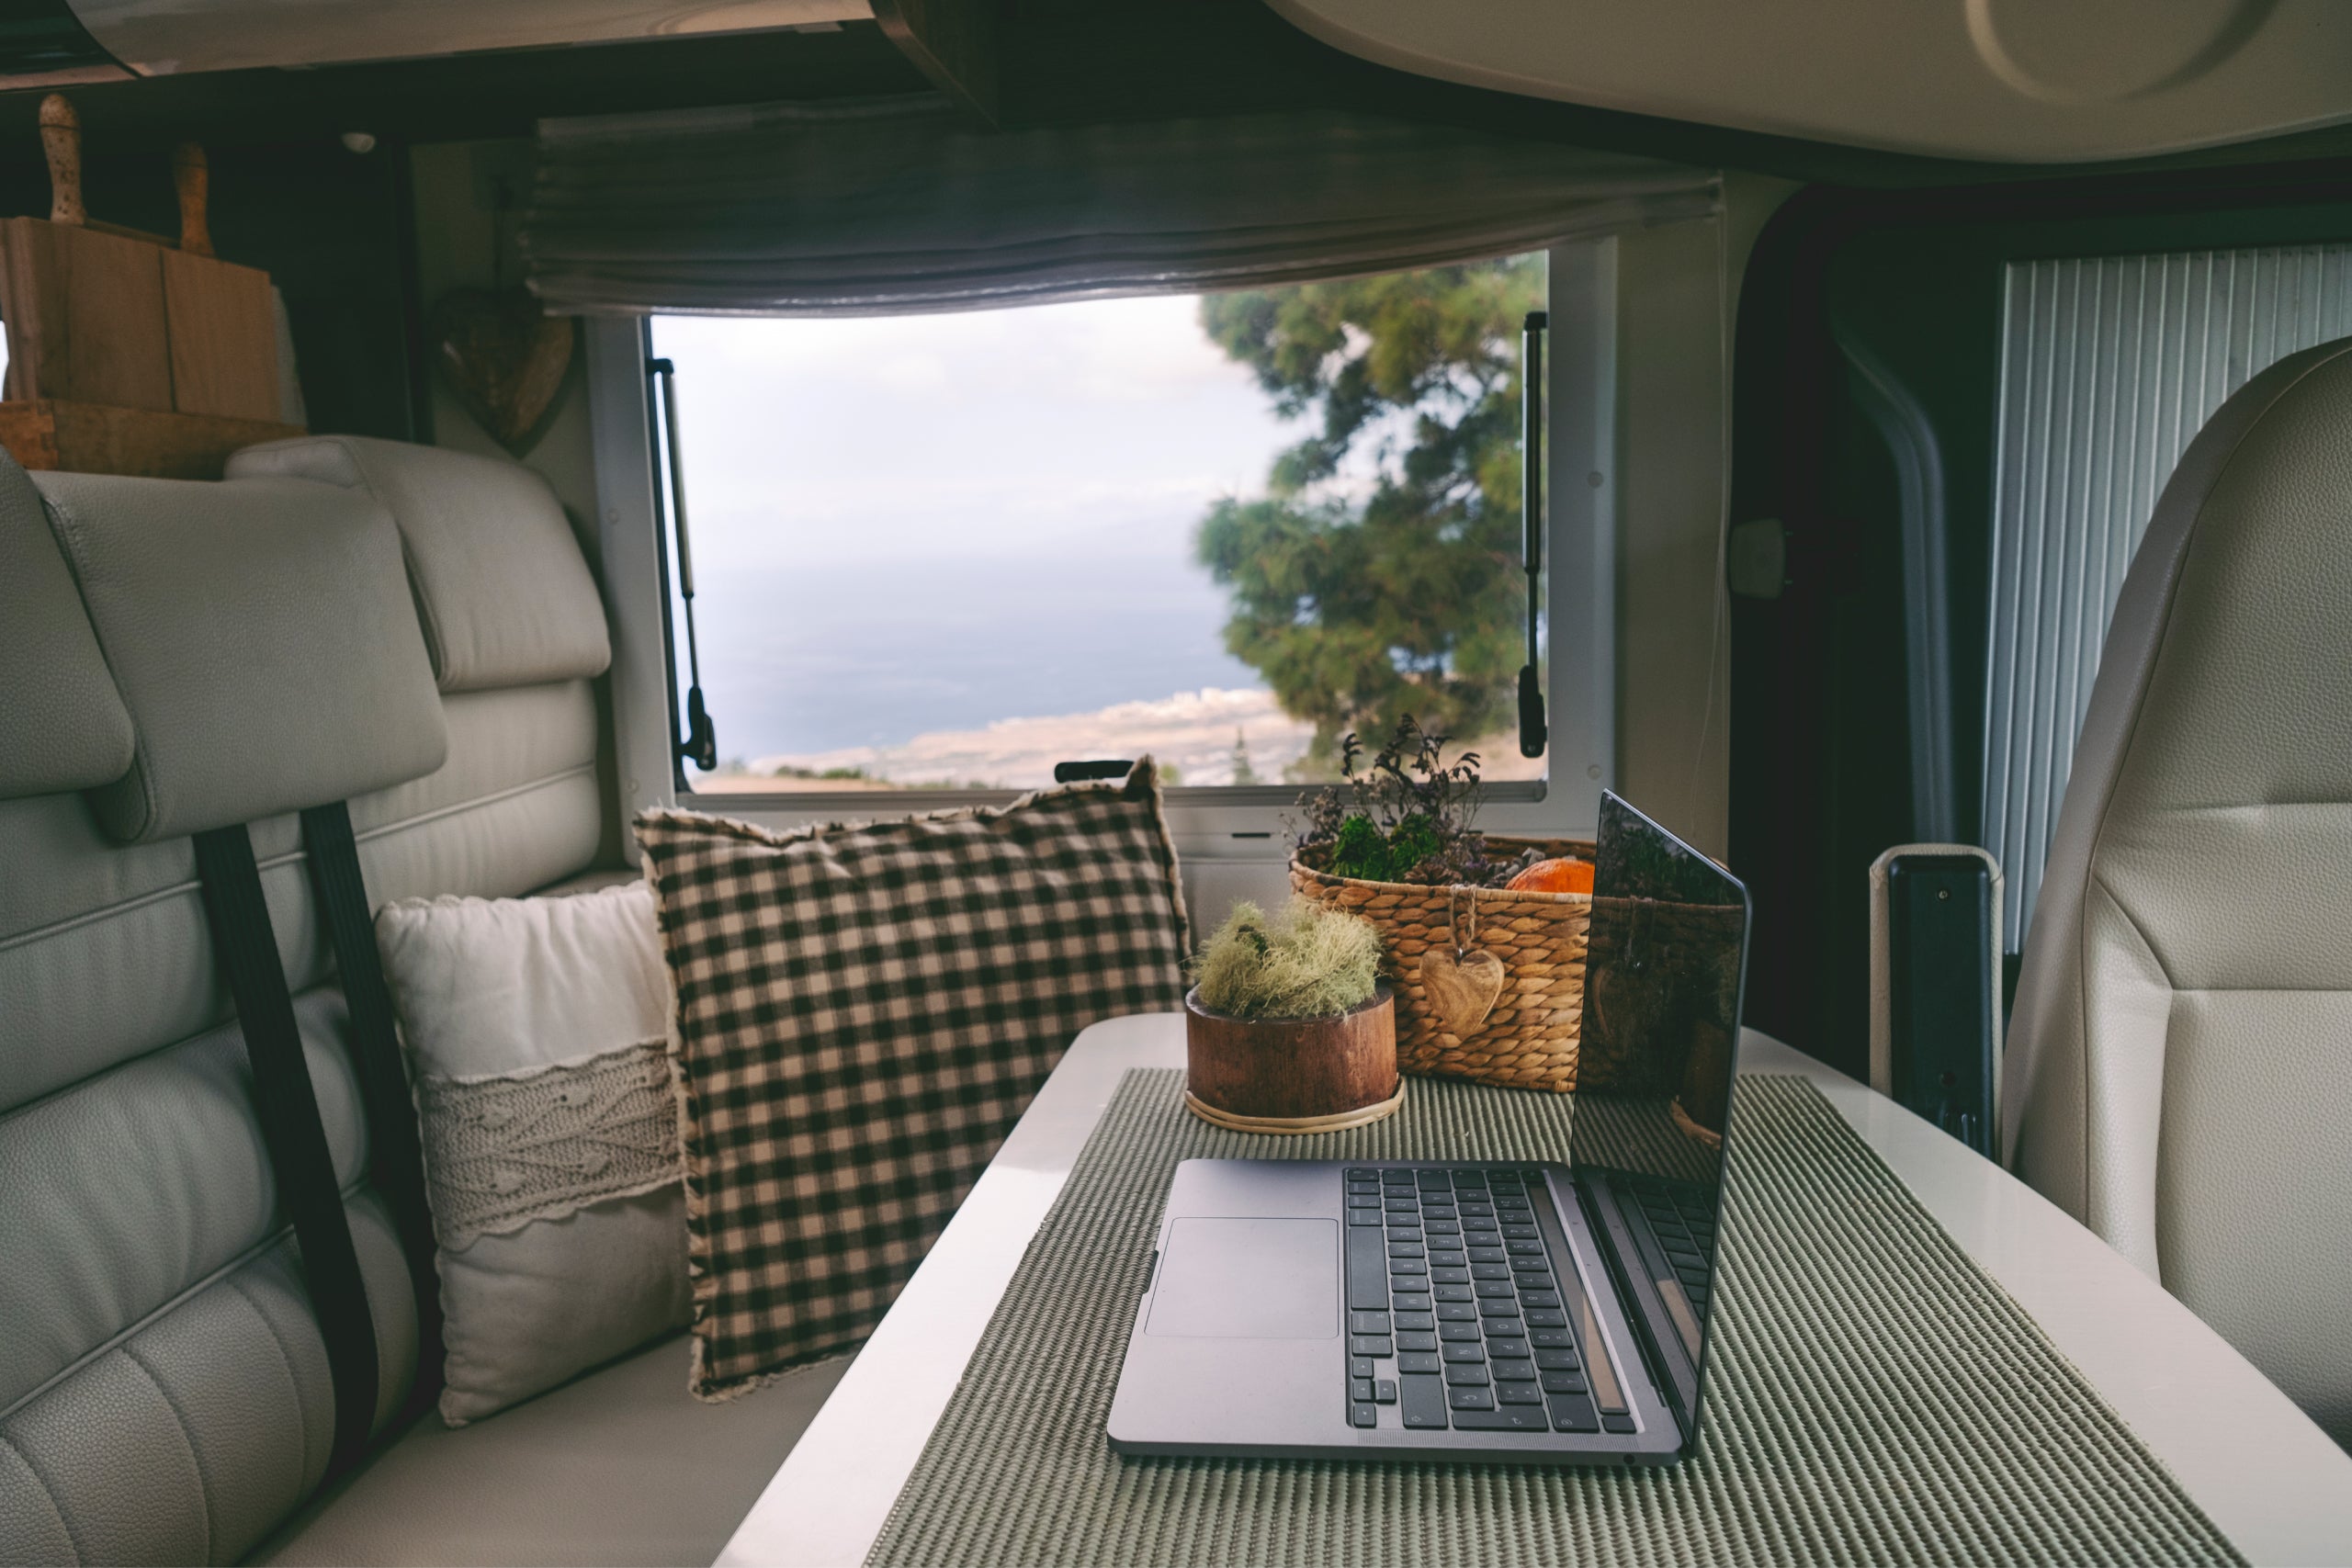 Travel lifestyle online digital nomad work place inside modern camper van